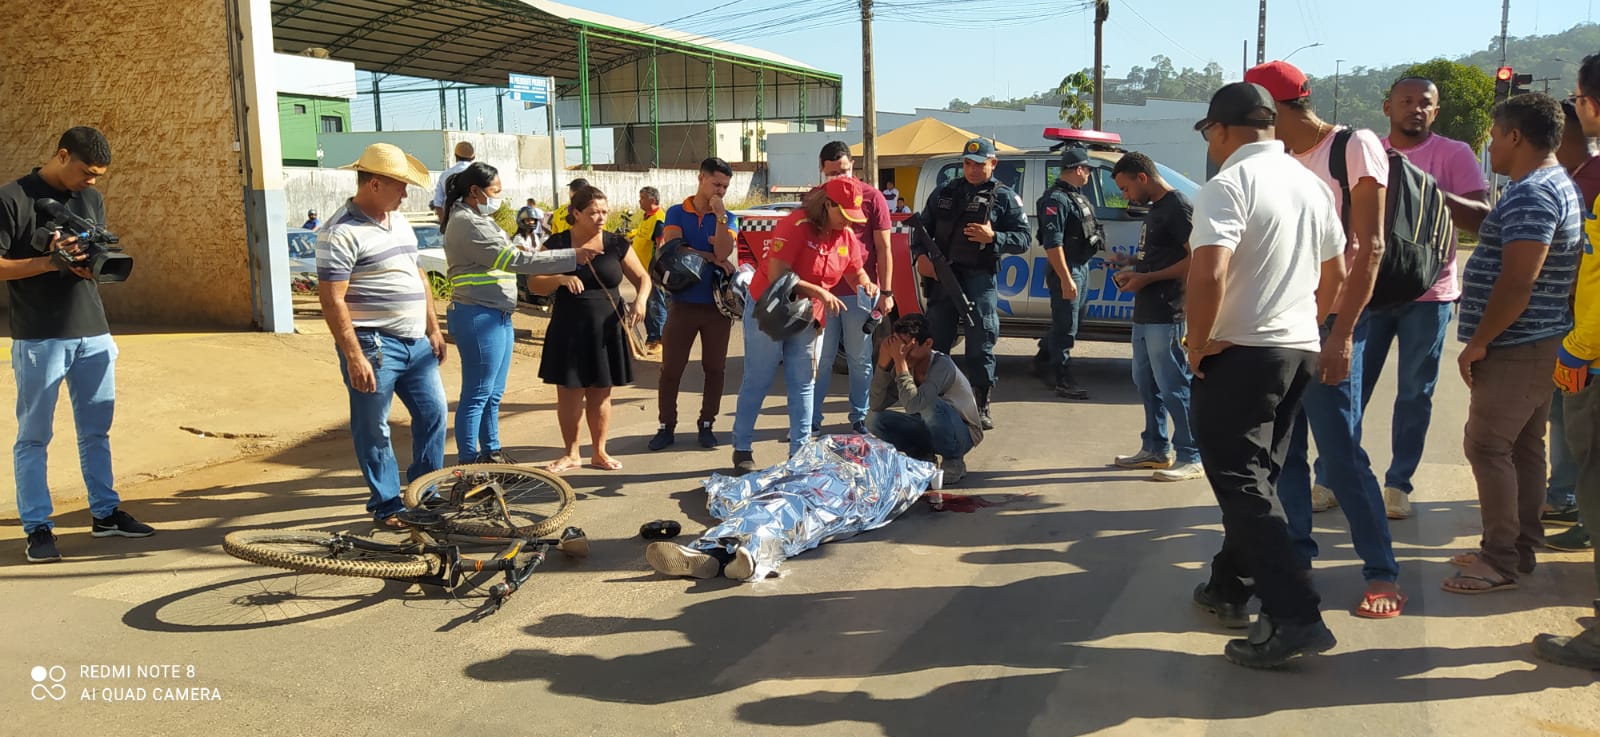  Jovem morre atropelado por ônibus em Parauapebas